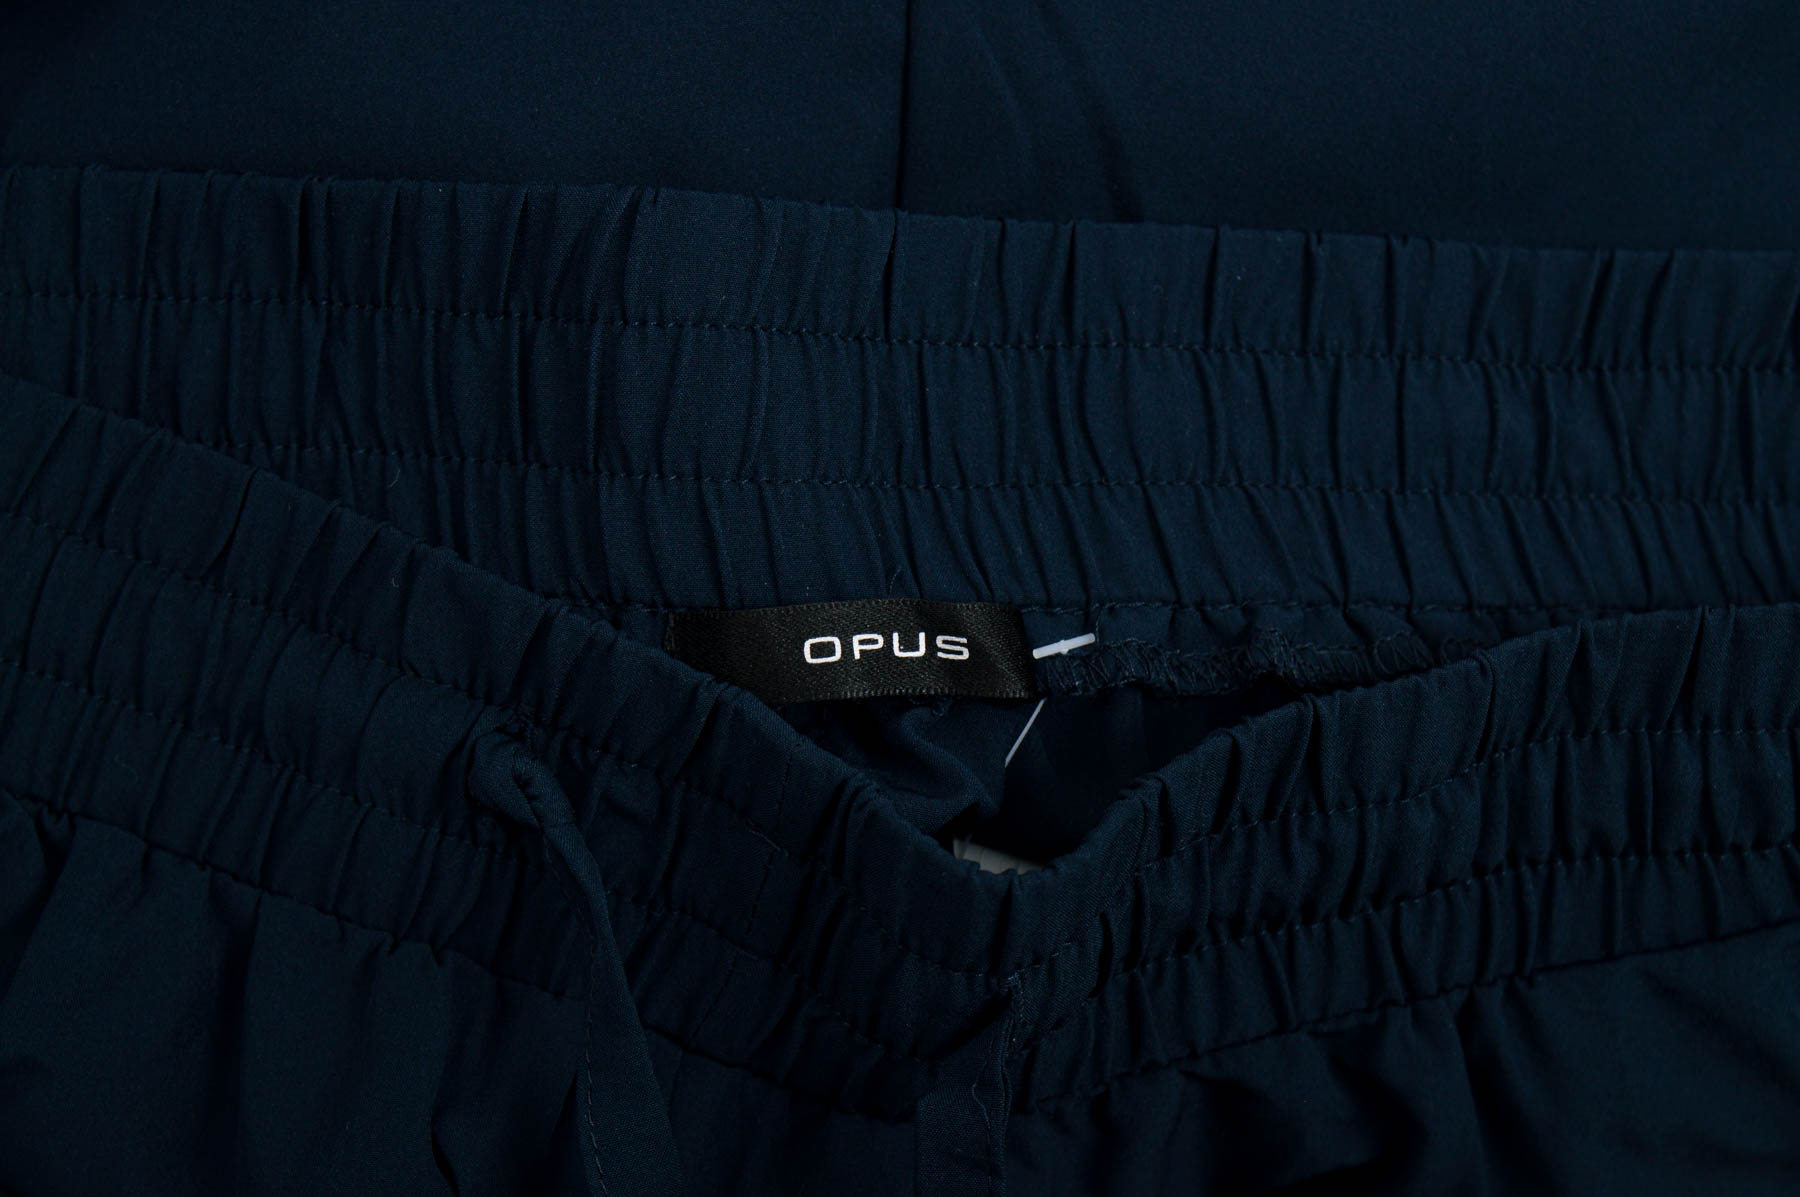 Γυναικεία παντελόνια - OPUS - 2